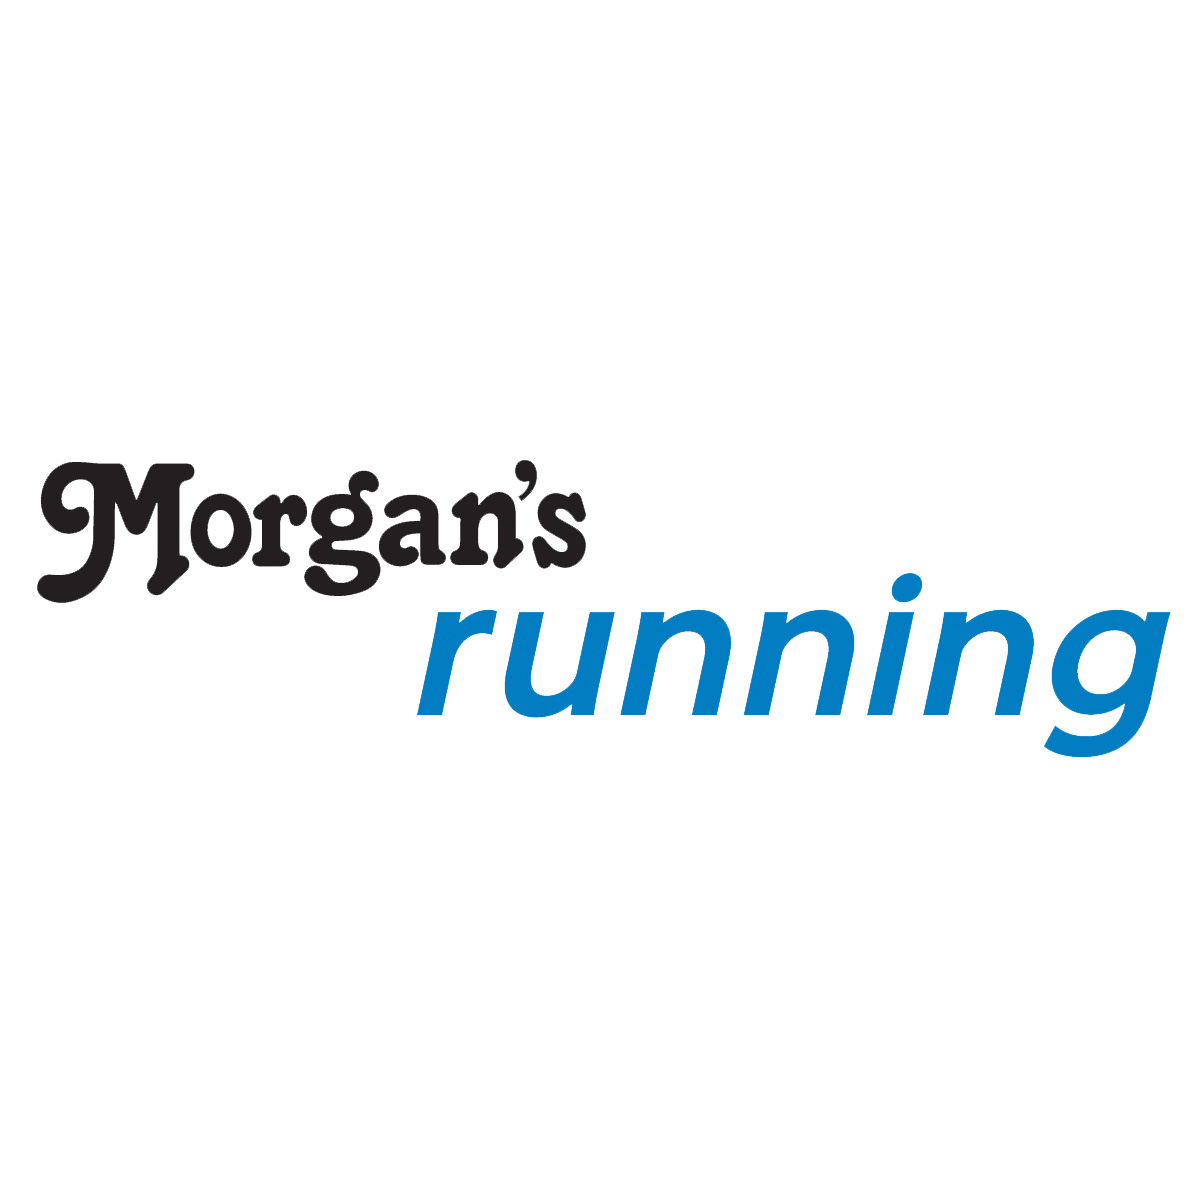 Morgan's Running